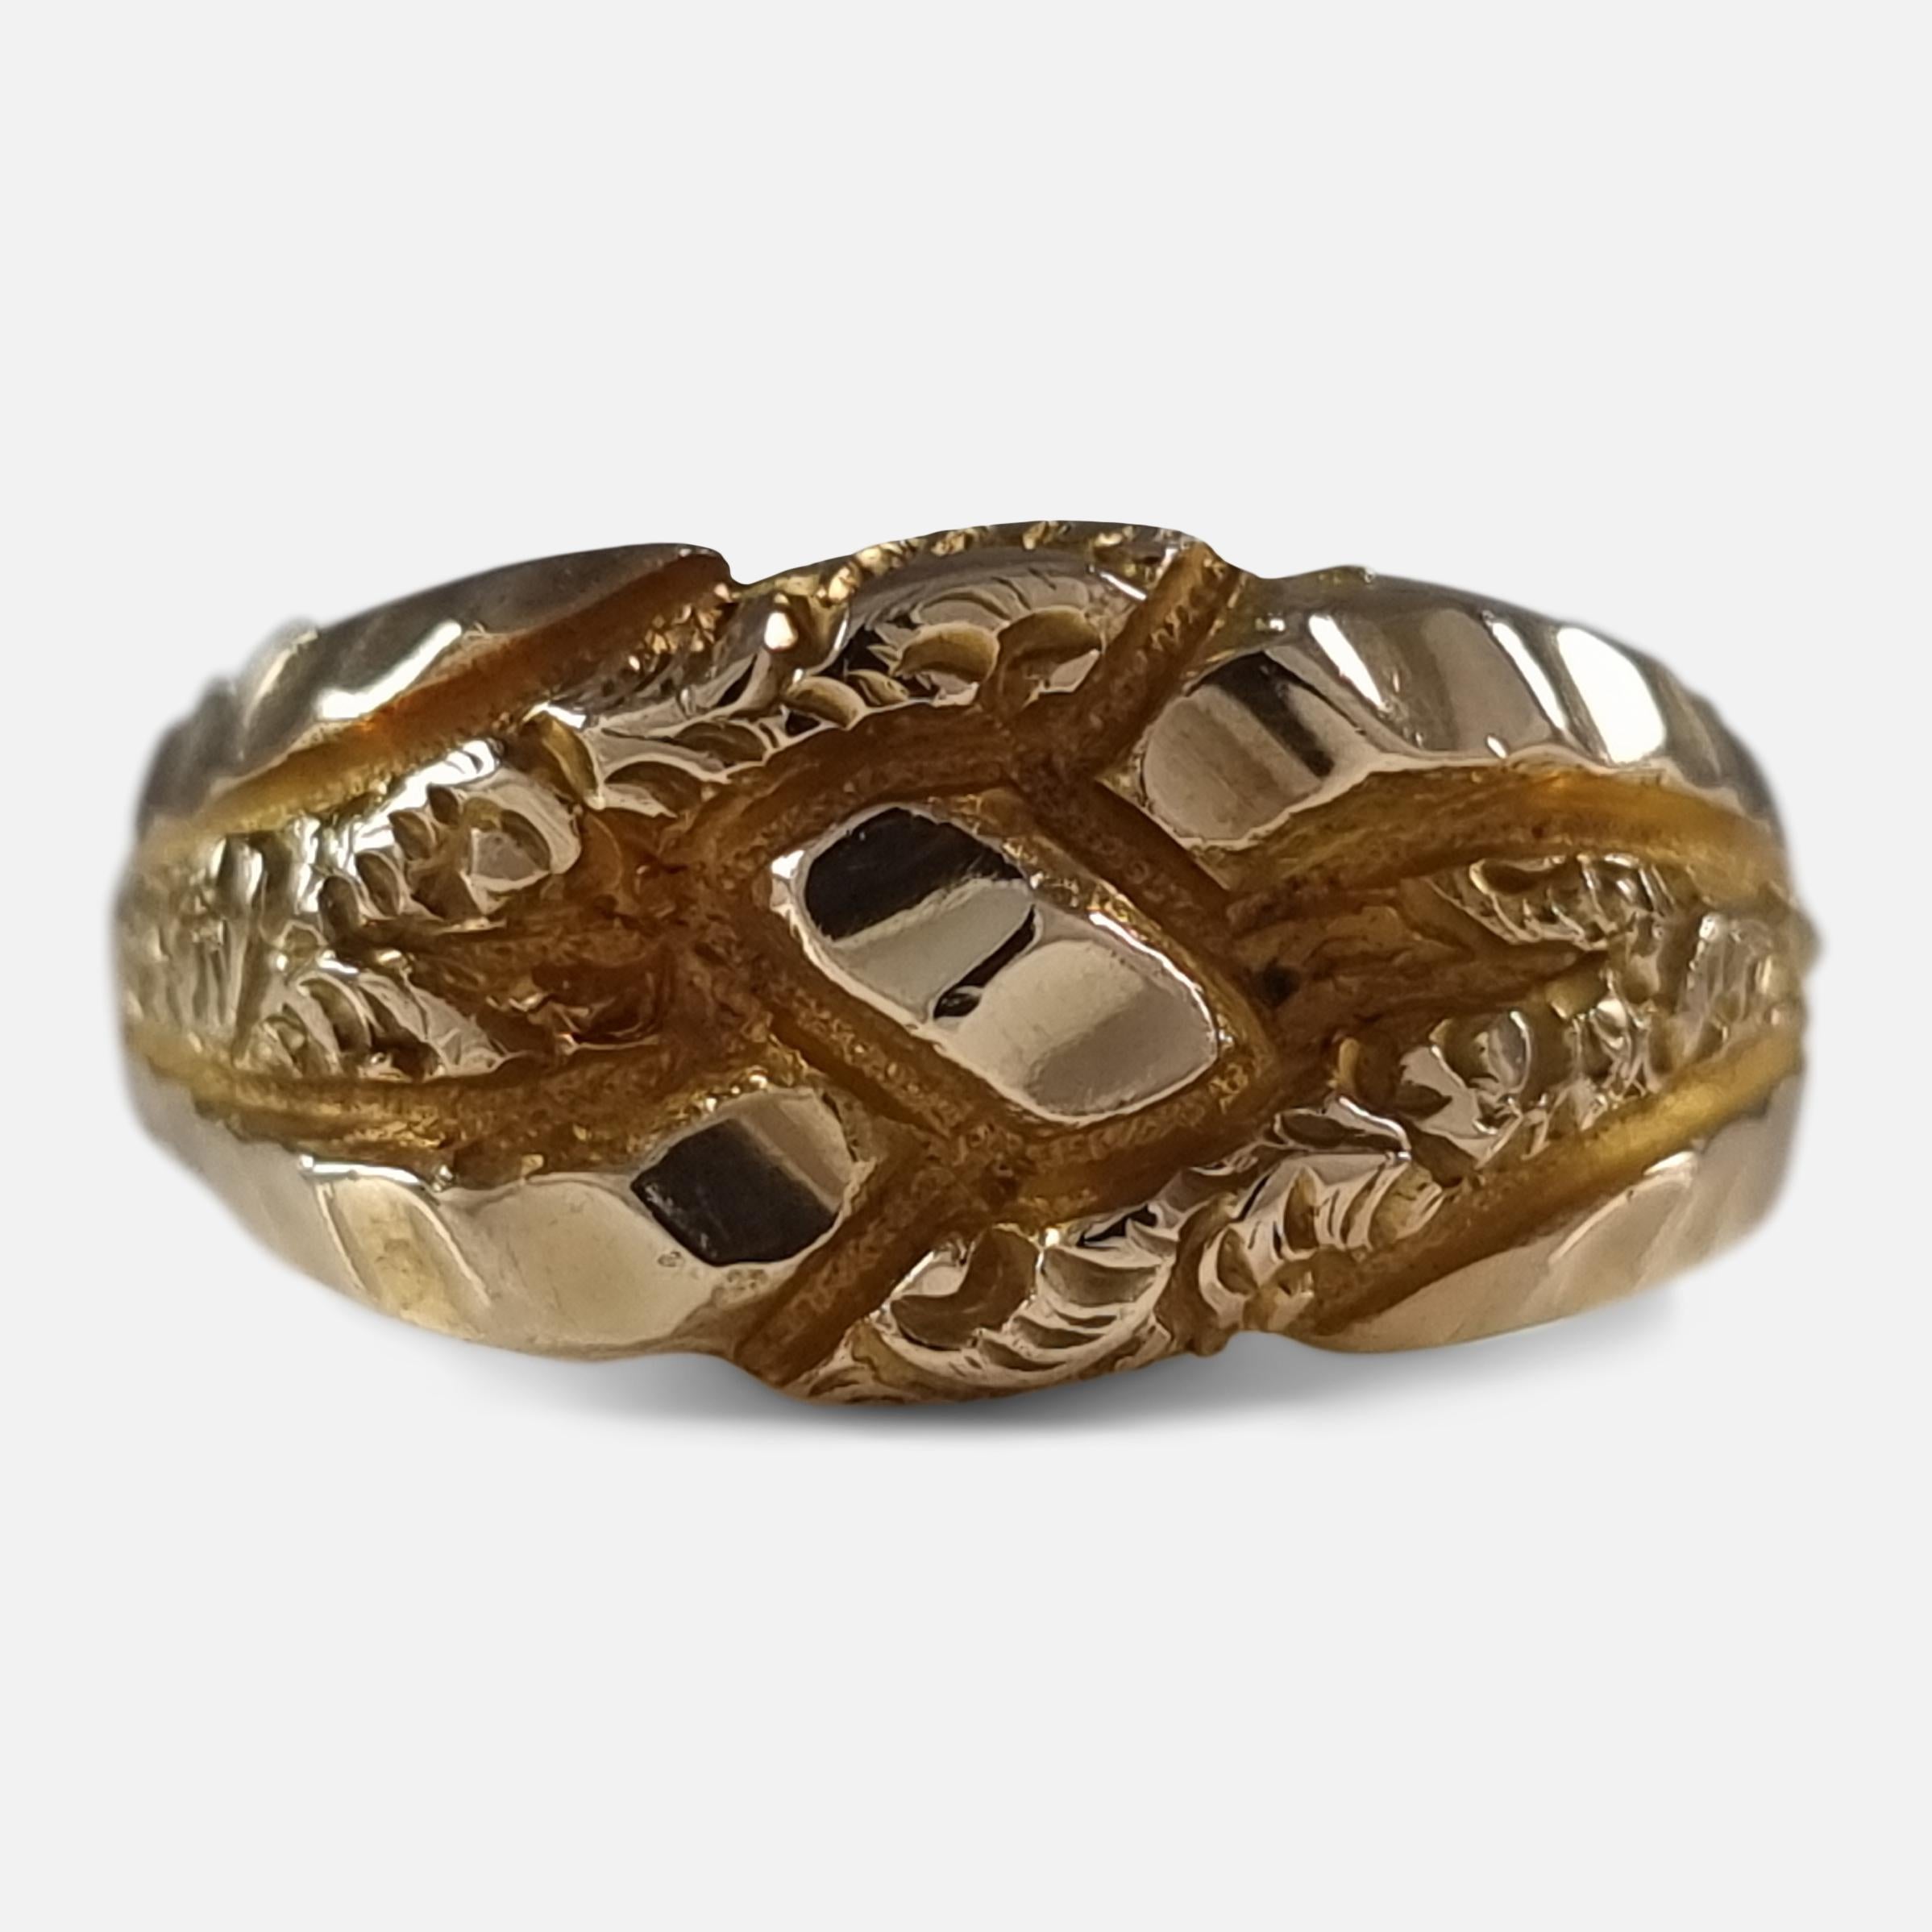 Ein George V. 18ct Gelbgold Keeper Ring. Der Ring ist auf der Vorderseite mit einer überlappenden, und Schnecke Dekoration eingraviert.

Der Ring ist mit Birminghamer Punzen, 